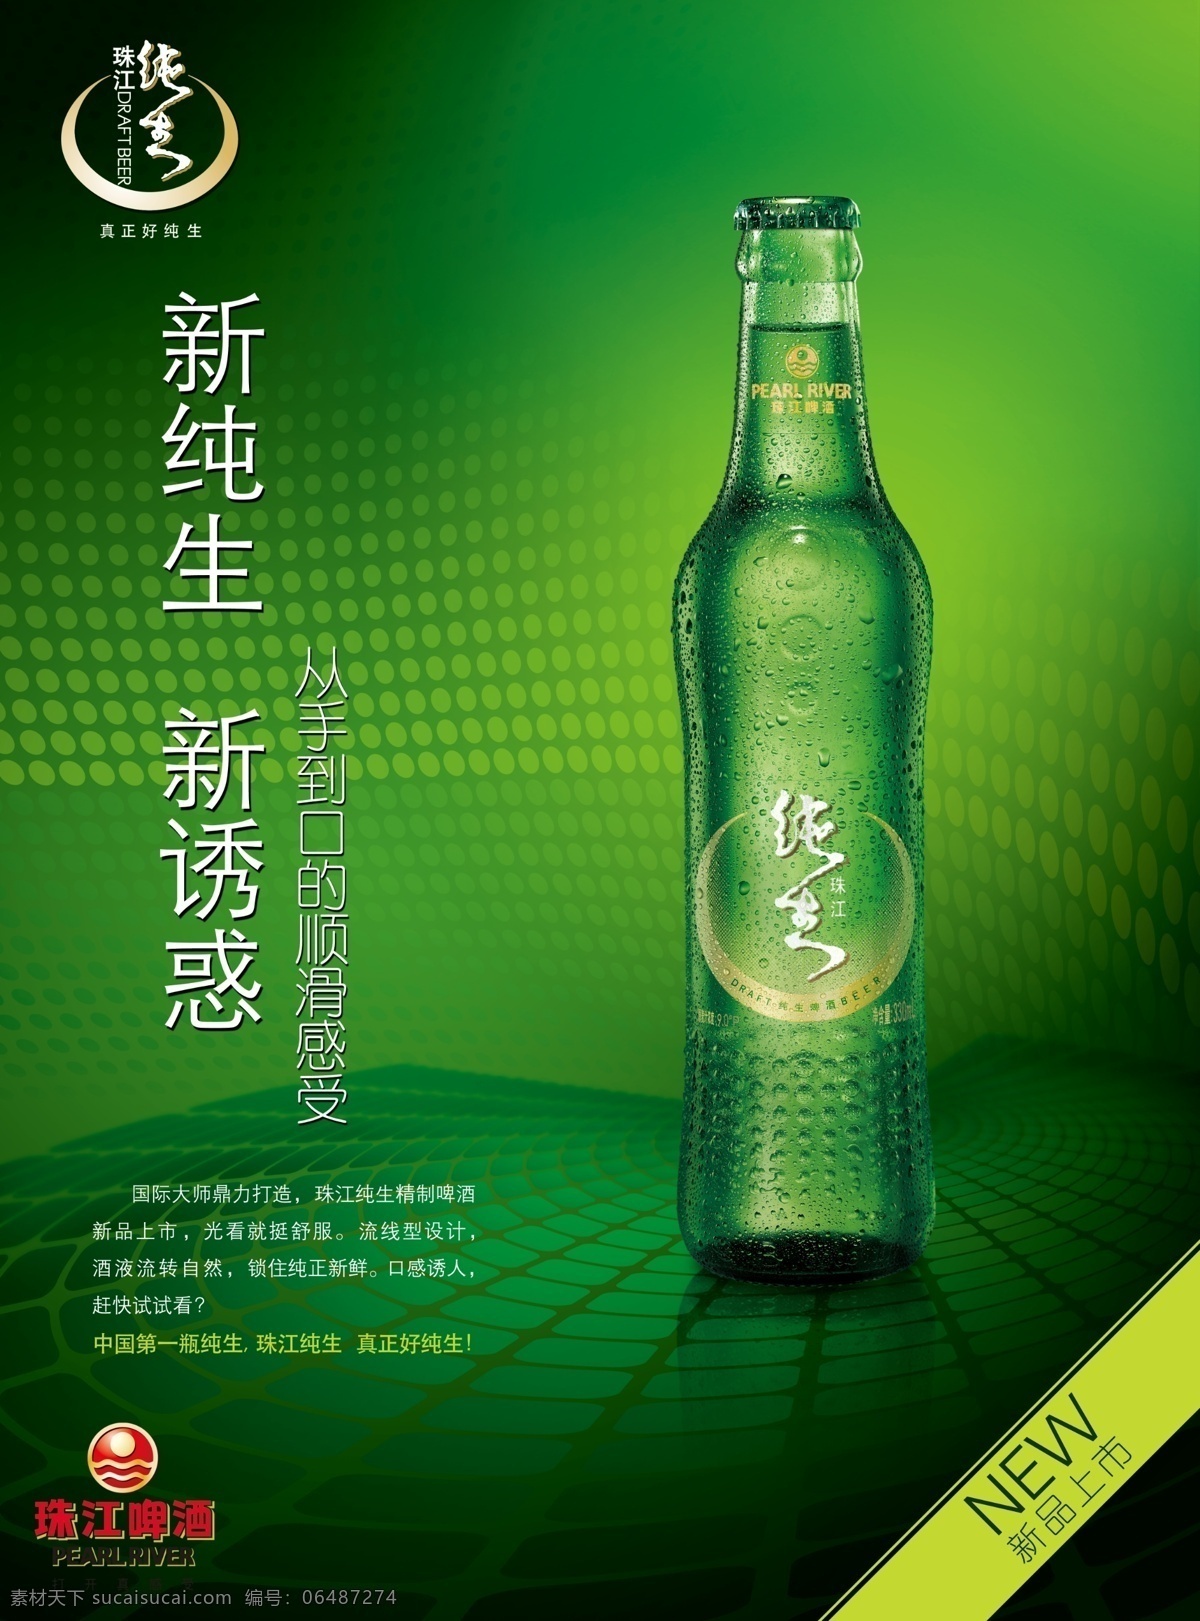 纯生啤酒 广告设计模板 啤酒 啤酒瓶 新品上市 源文件 珠江啤酒 珠江啤酒广告 新纯生 新诱惑 其他海报设计